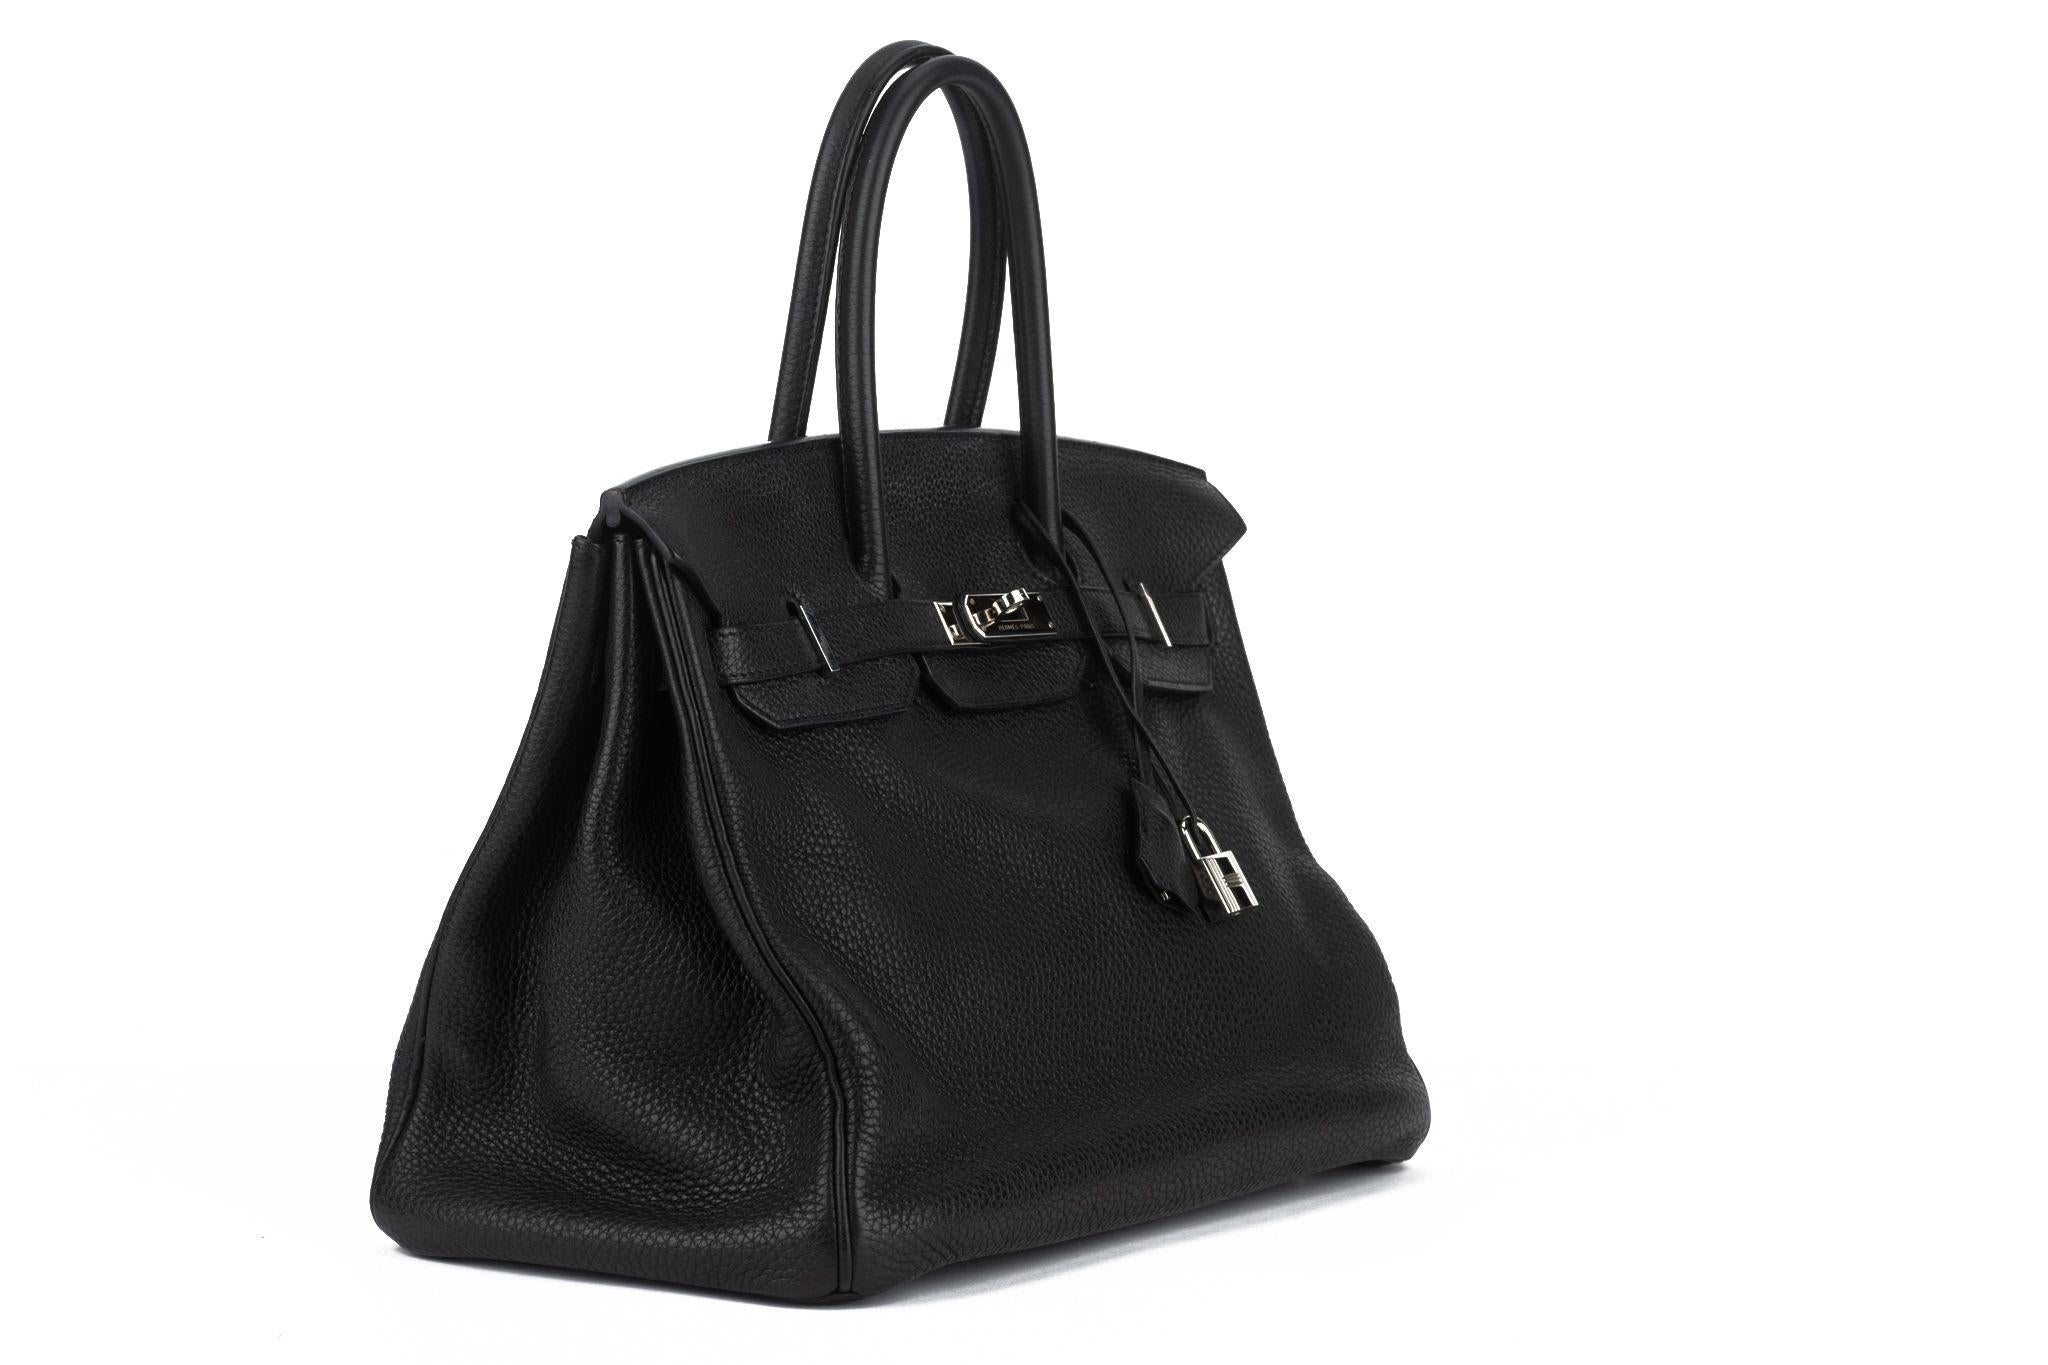 Hermès Birkin 35 aus schwarzem Taurillon-Clemence-Leder mit Palladium-Hardware und farblich abgestimmten Nähten. Charakteristischer Schlabberlook von Taurillon Clemence, kann mit Tascheneinsatz konstruierter aussehen. Vordere Klappe, zwei Riemen mit